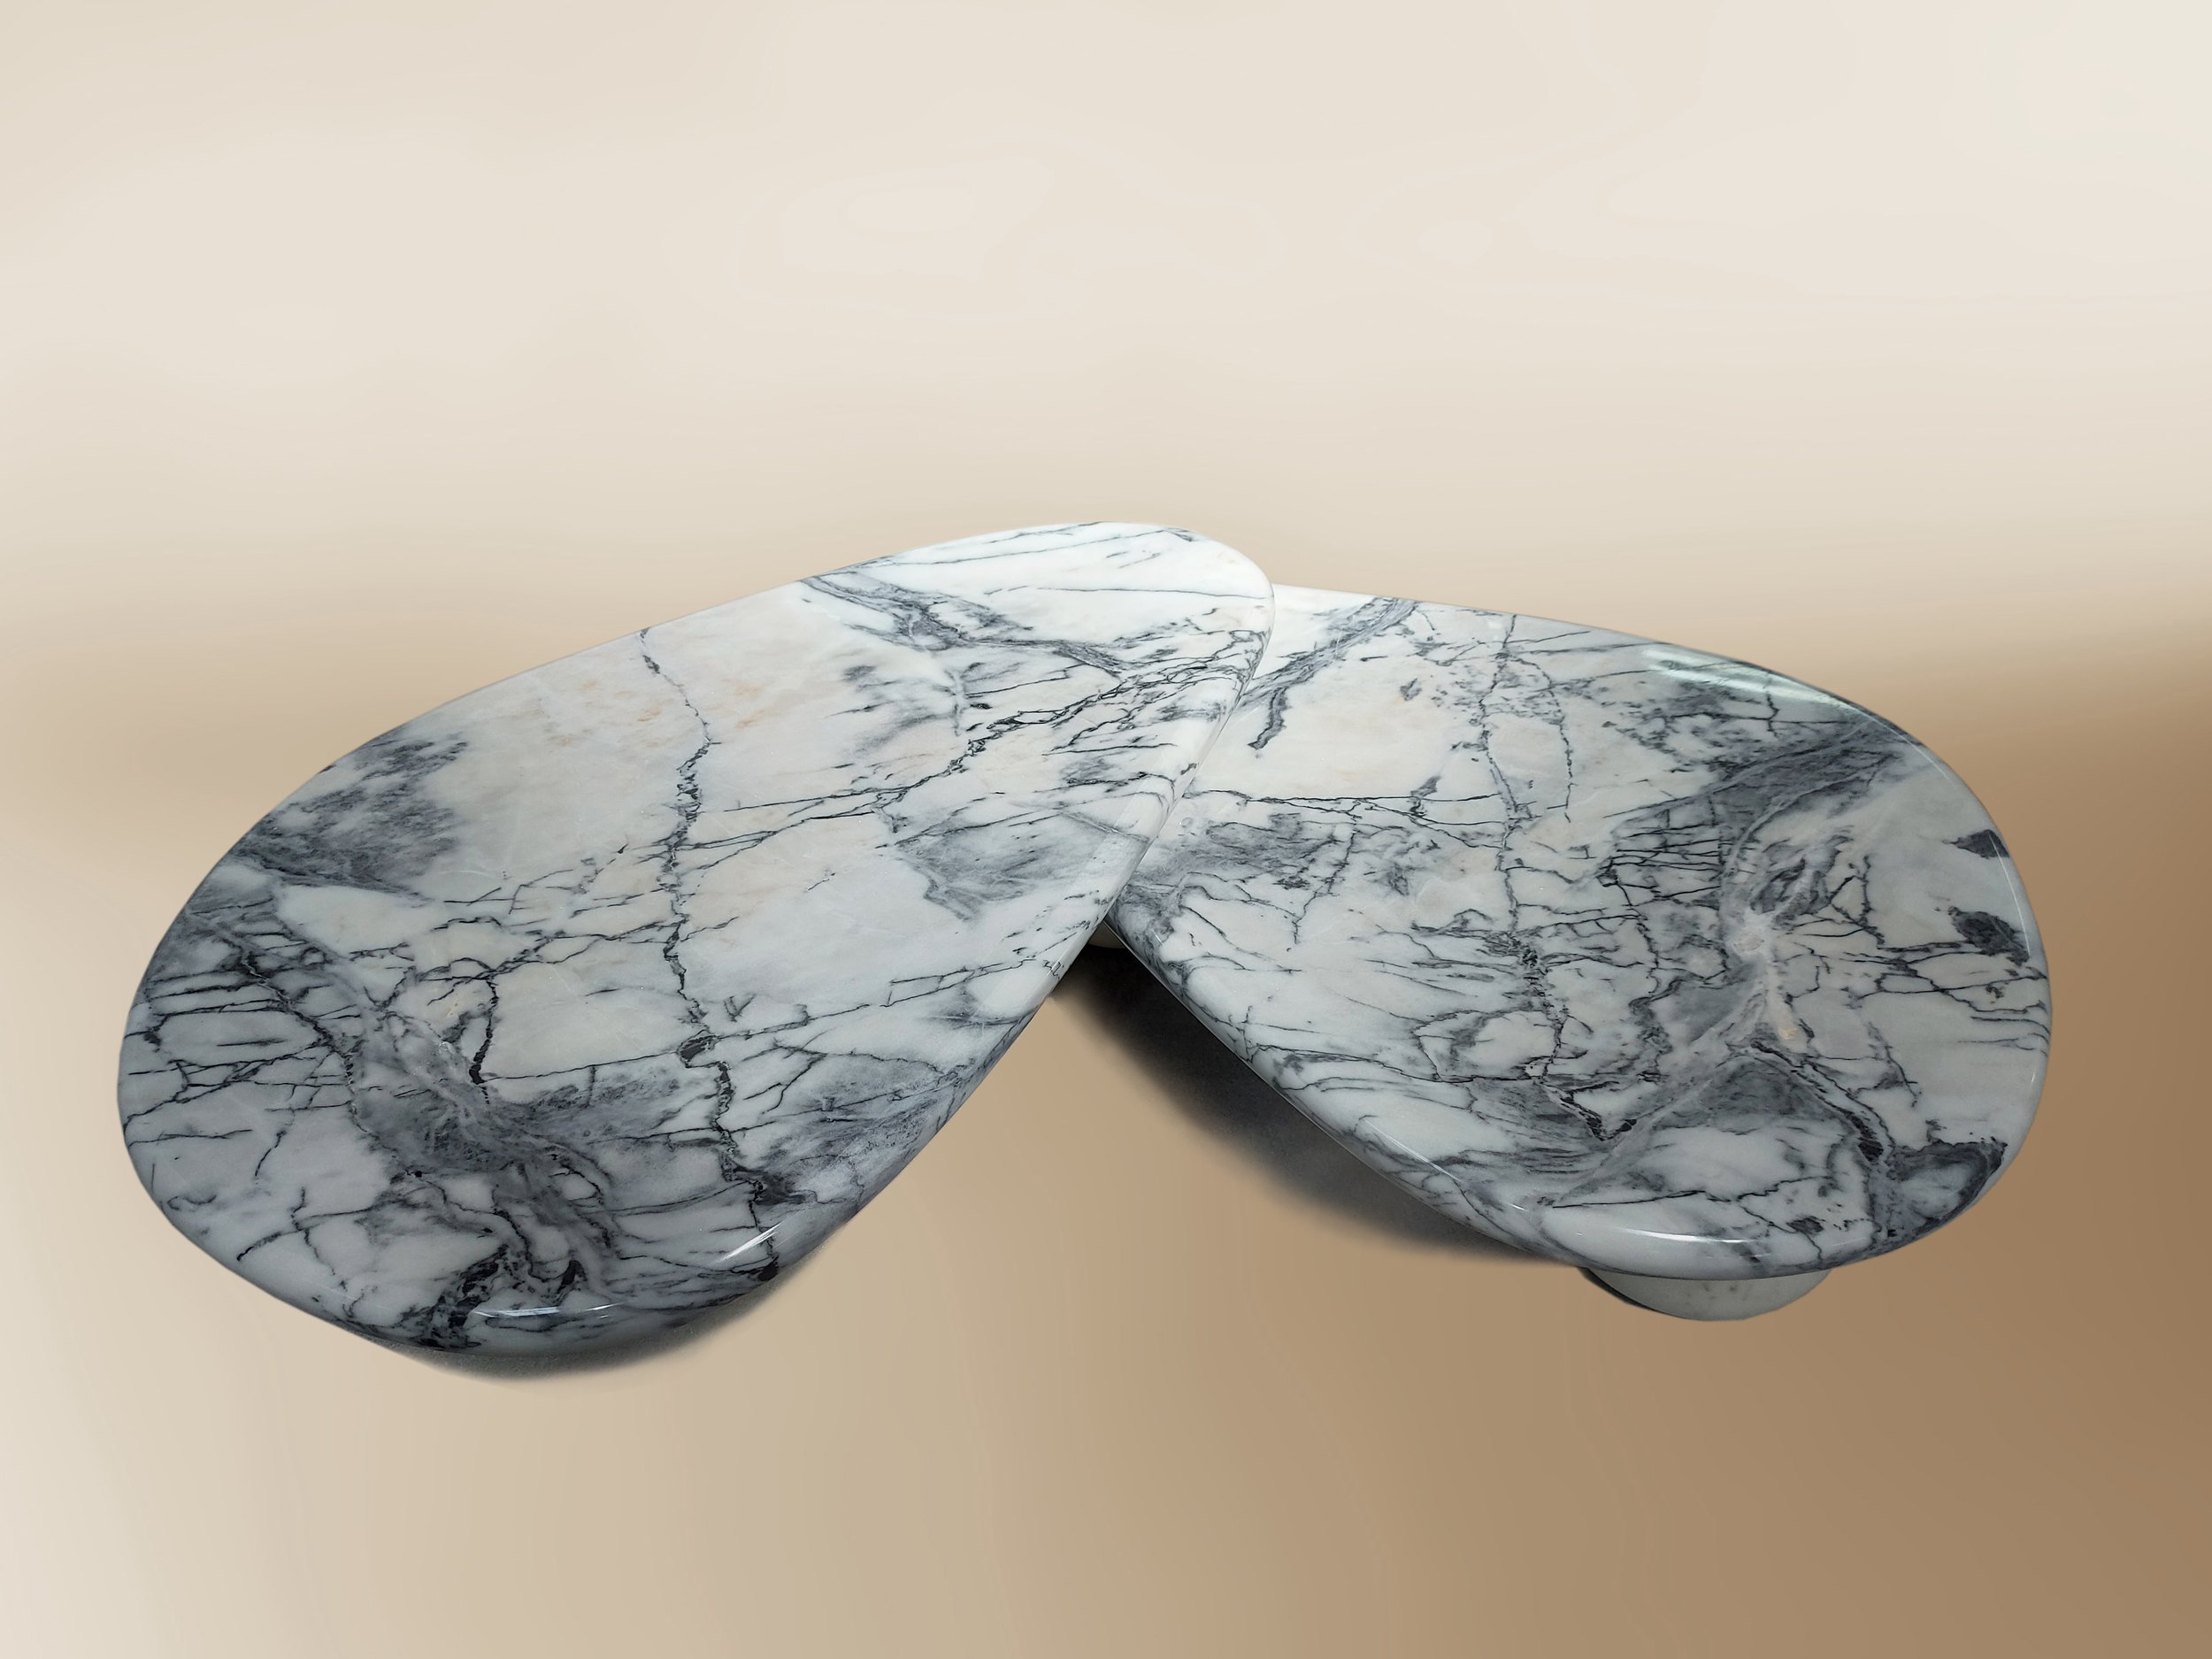 marble center table dovain studio caracole sergio prieto designer.jpg